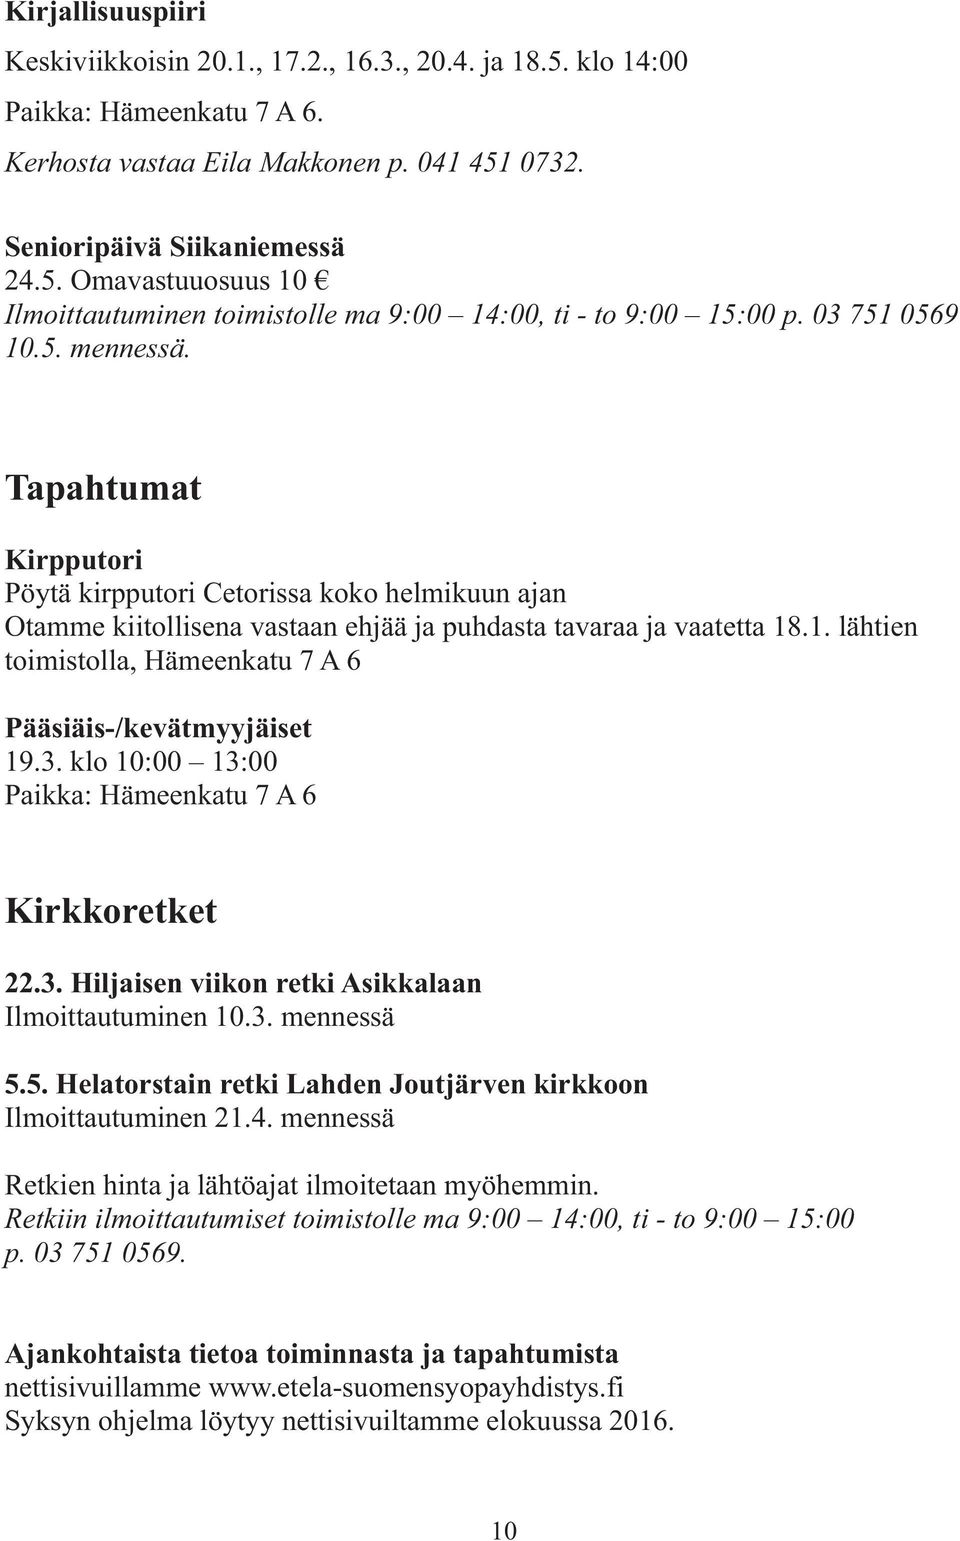 3. klo 10:00 13:00 Paikka: Hämeenkatu 7 A 6 Kirkkoretket 22.3. Hiljaisen viikon retki Asikkalaan Ilmoittautuminen 10.3. mennessä 5.5. Helatorstain retki Lahden Joutjärven kirkkoon Ilmoittautuminen 21.